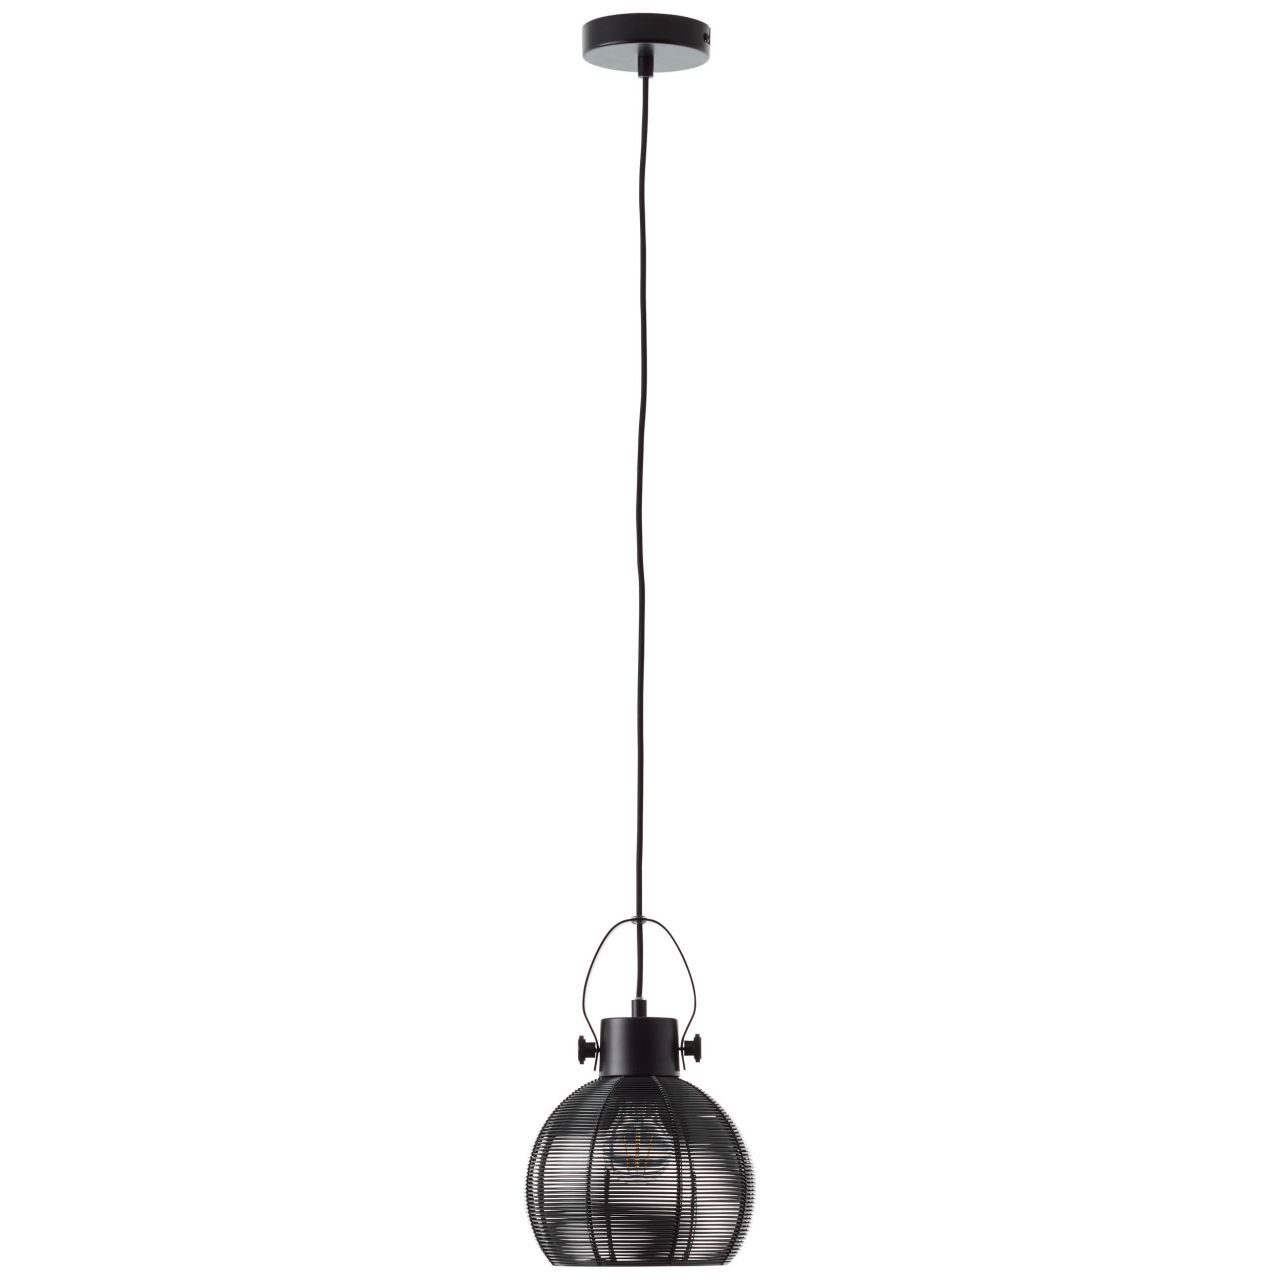 Lampe 20cm E27, fü A60, 60W, 1x Brilliant Sambo geeignet Pendelleuchte Pendelleuchte schwarz Sambo,